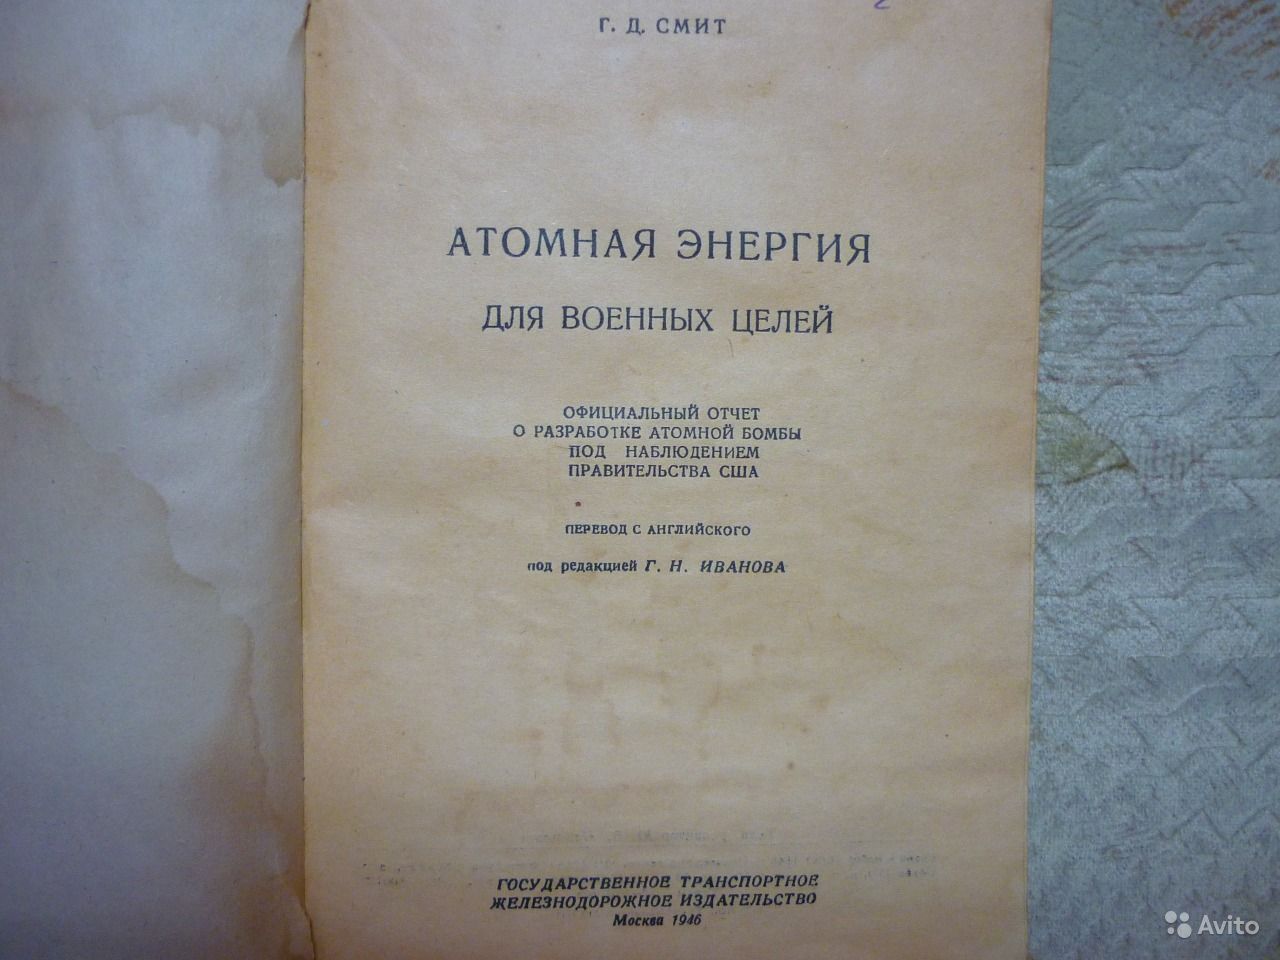 1946-Soviet-Smyth-Report-inside.jpg